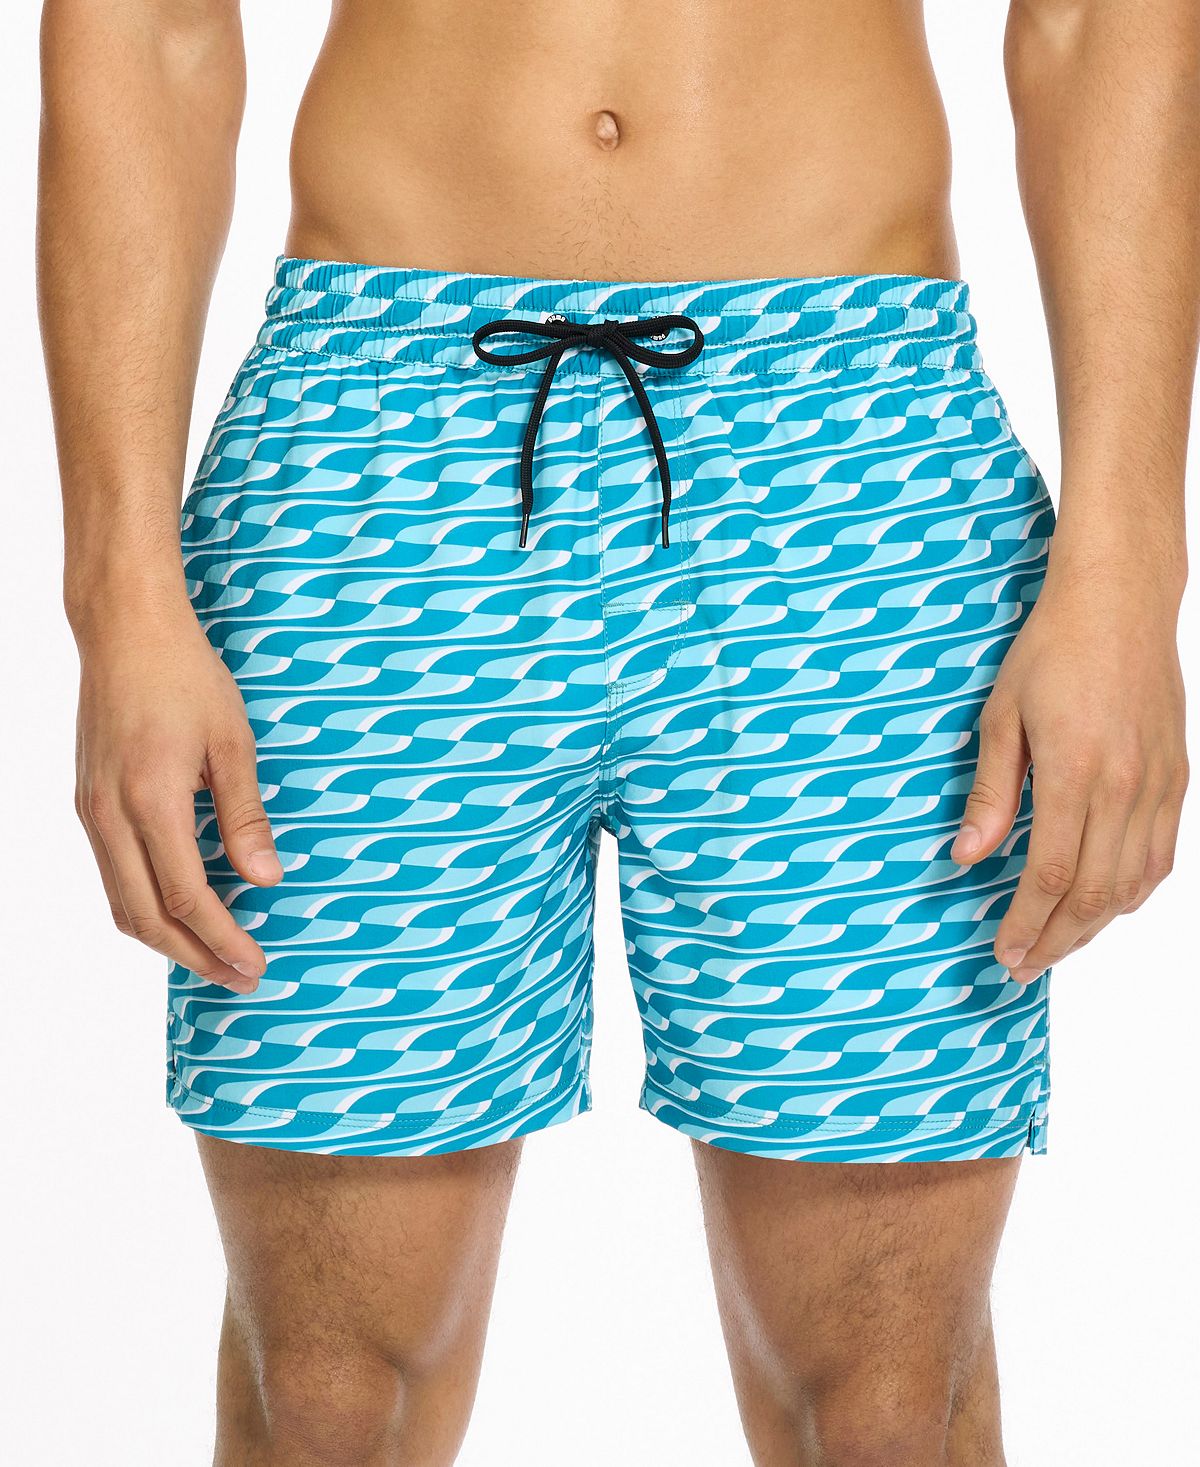 Мужские шорты для плавания с геометрическим принтом 5 дюймов Puma